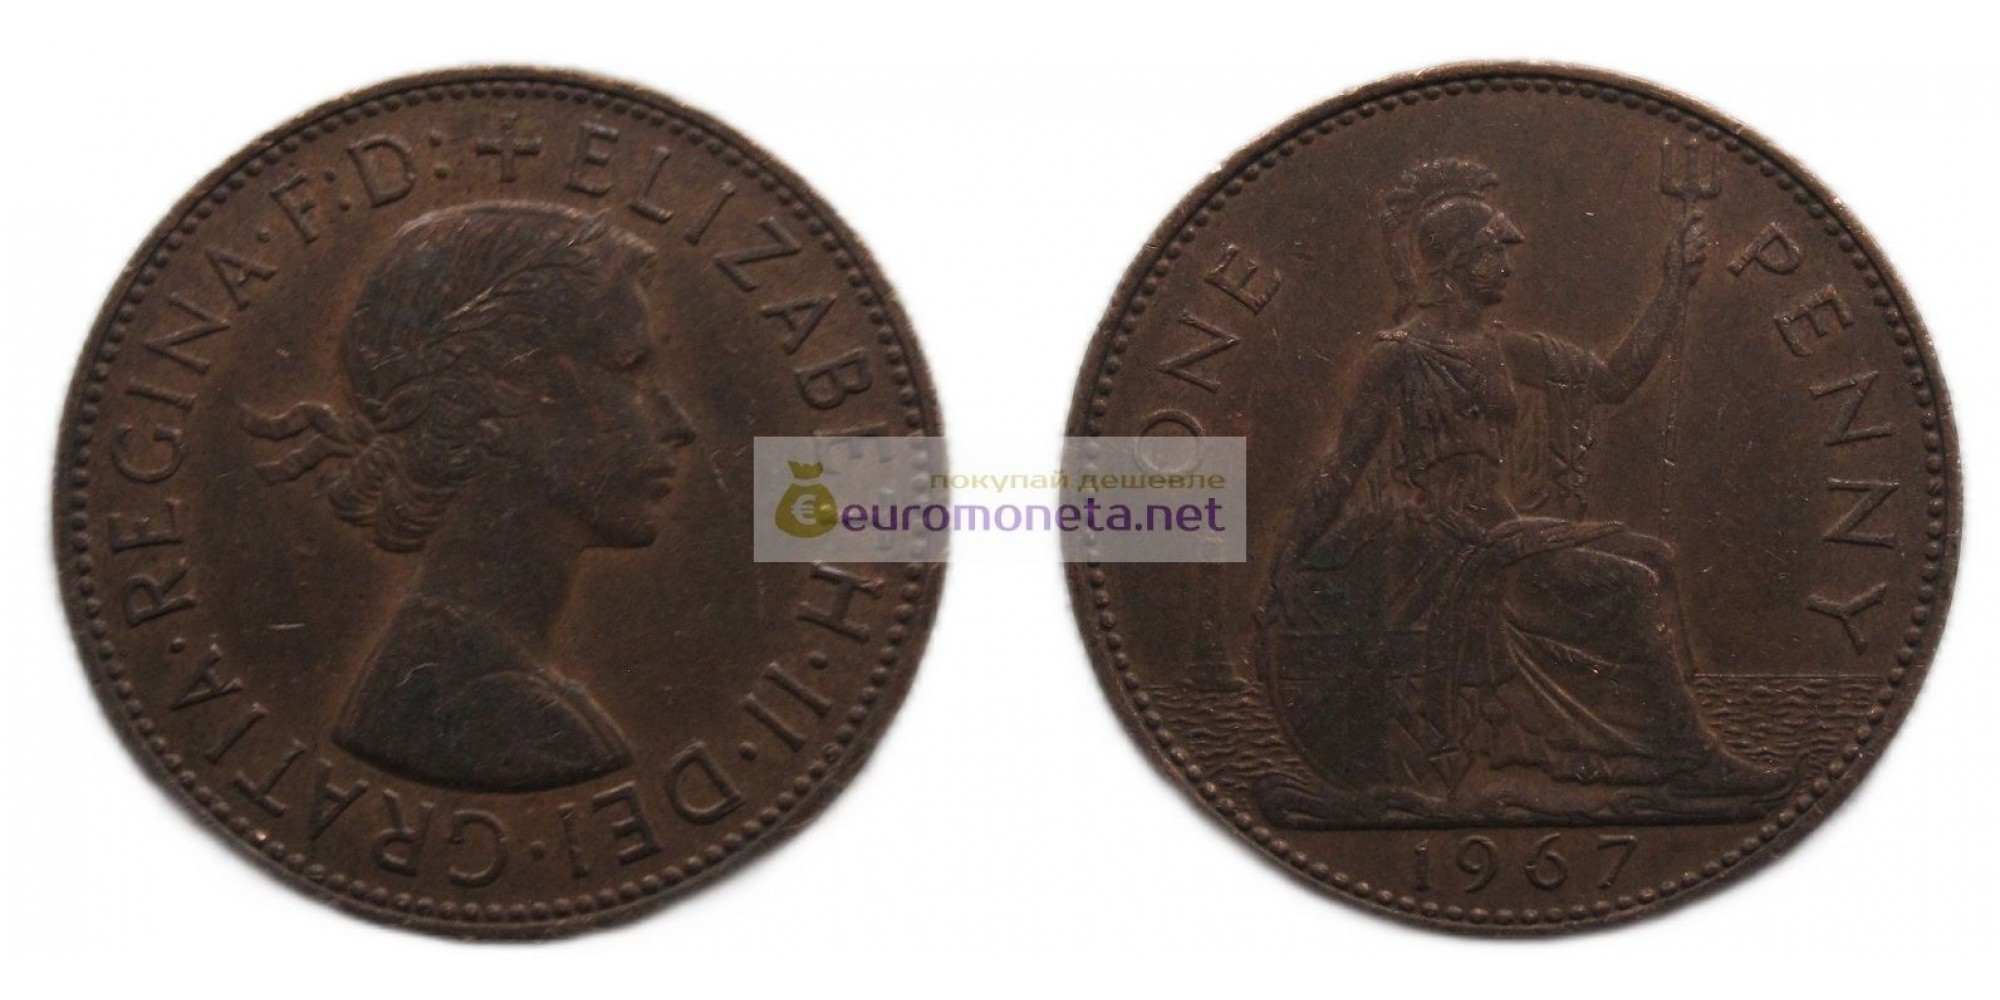 Великобритания 1 пенни 1967 год. Королева Елизавета II